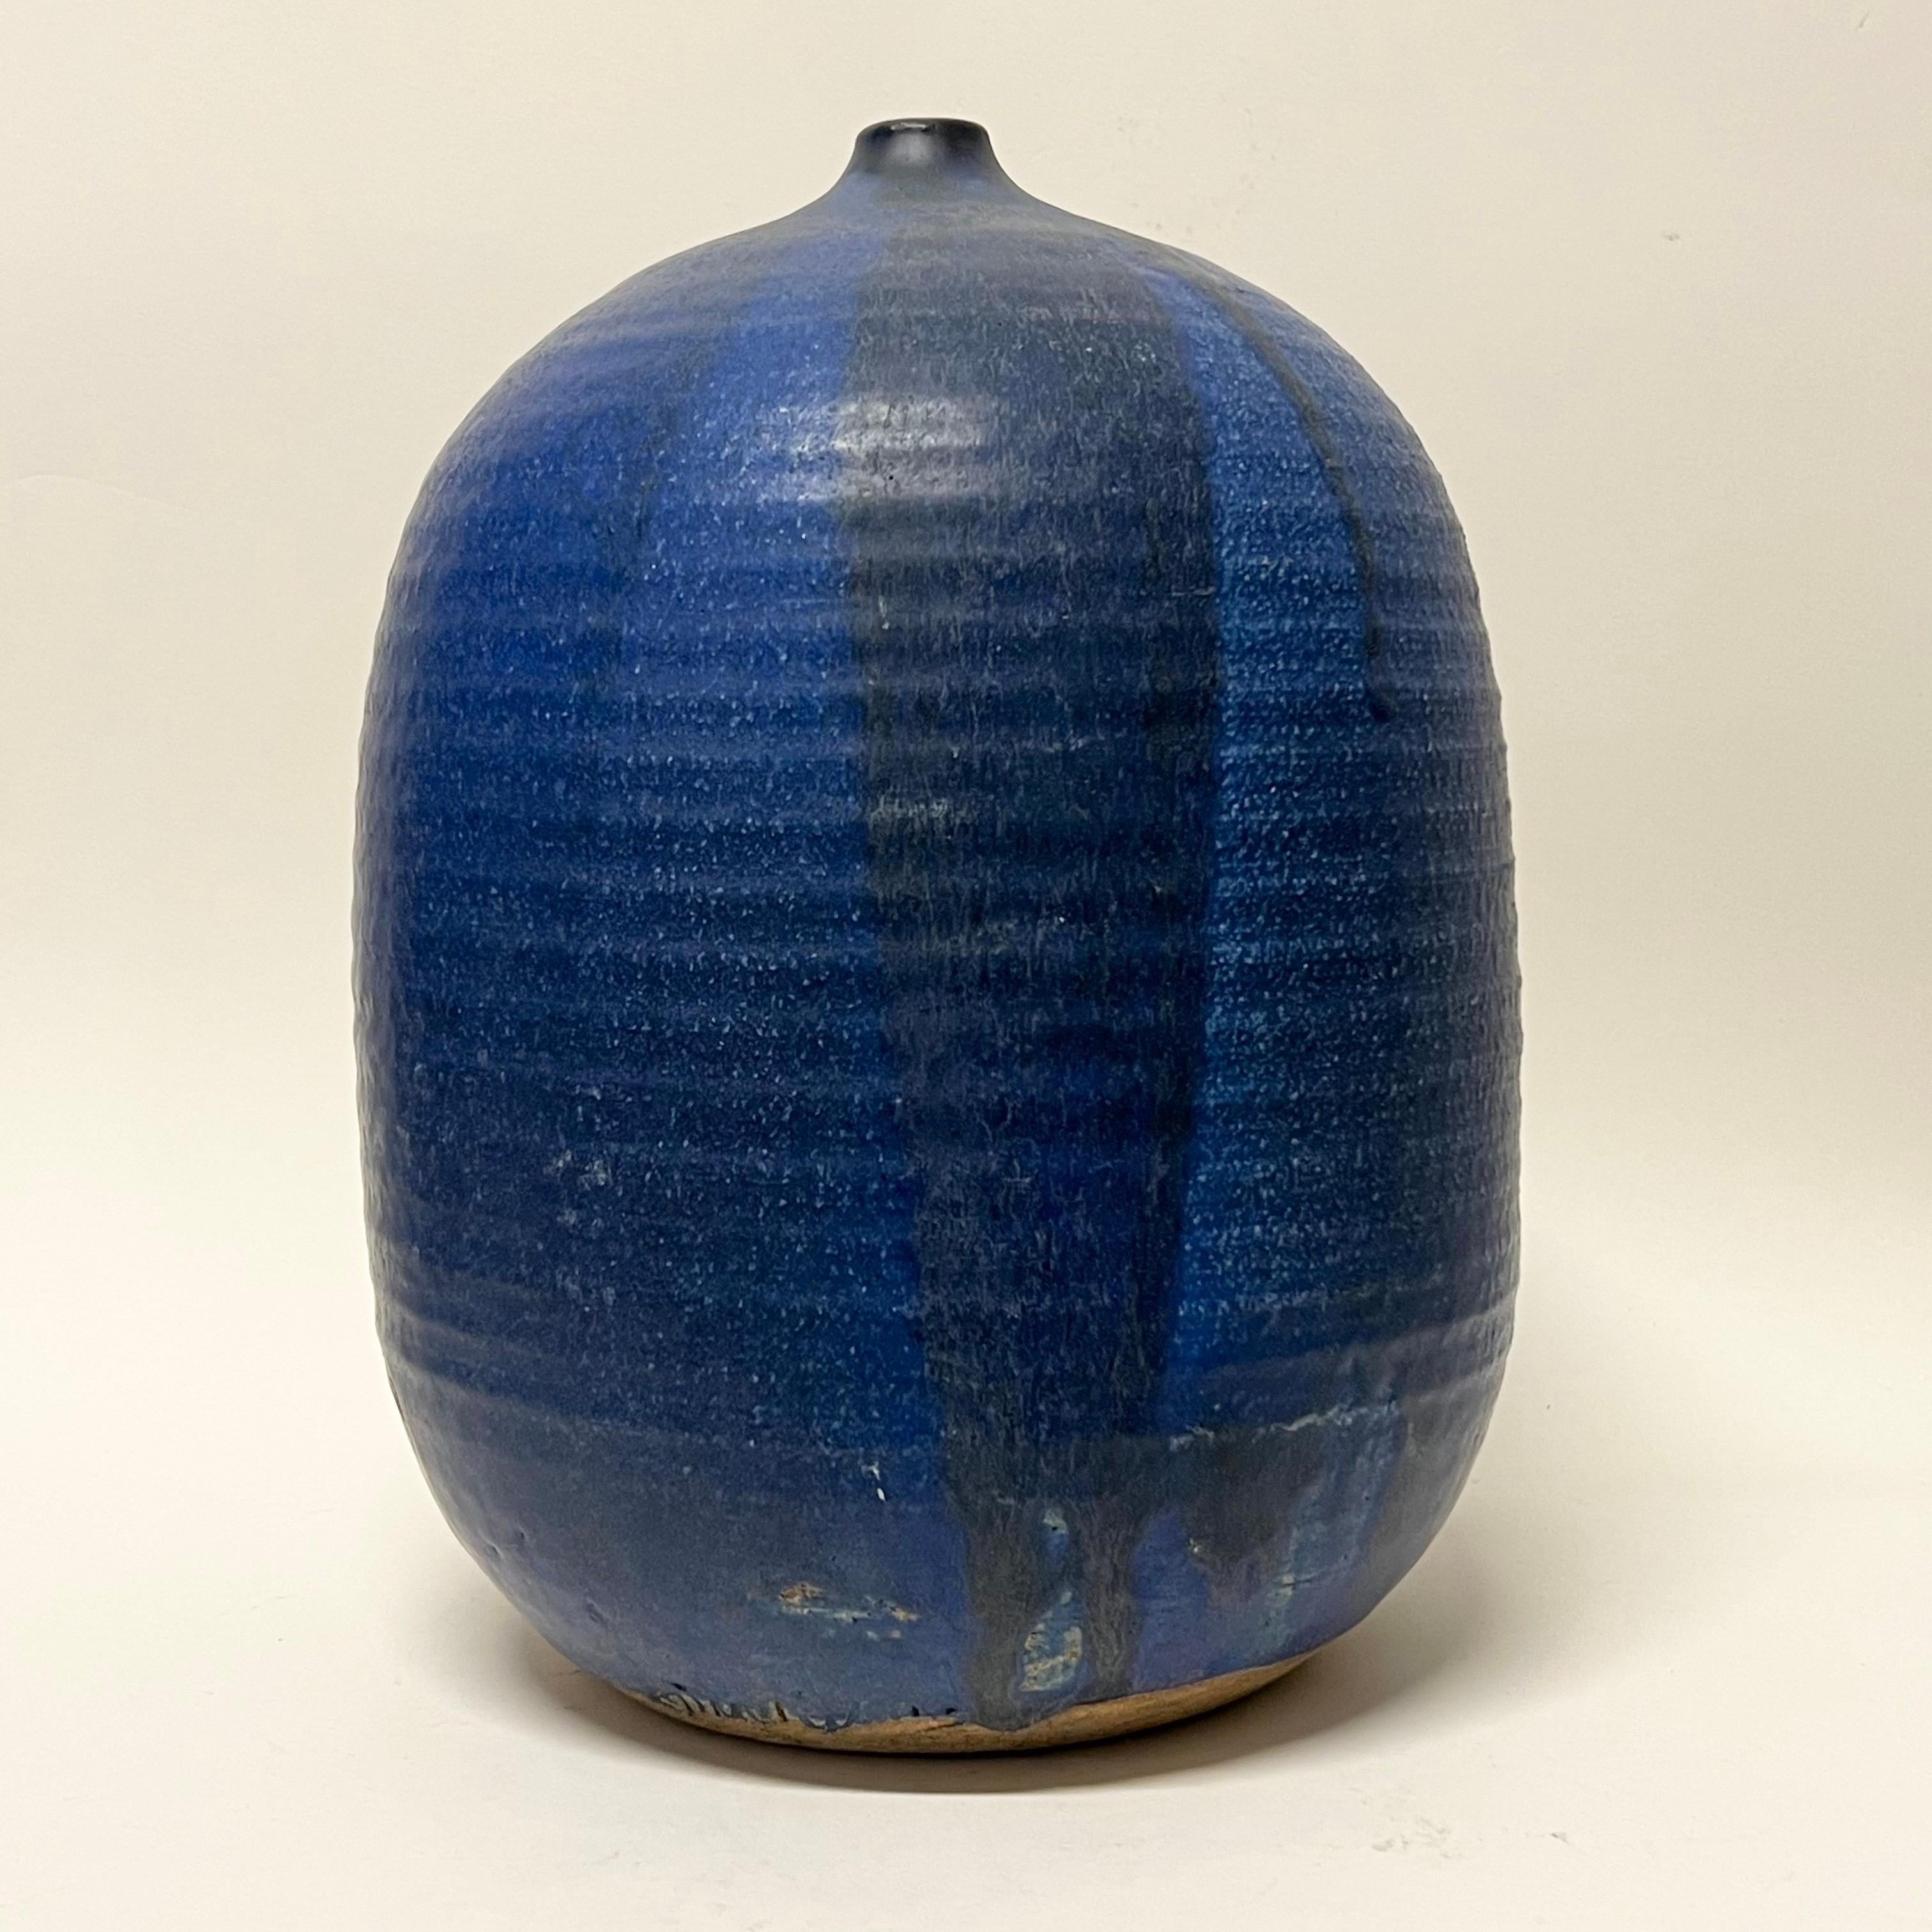 Absolument magnifique pot de lune en céramique de studio de grande taille bleu cobalt à la manière de Toshiko Takaezu. Signé de manière illisible. Une forme étonnante.